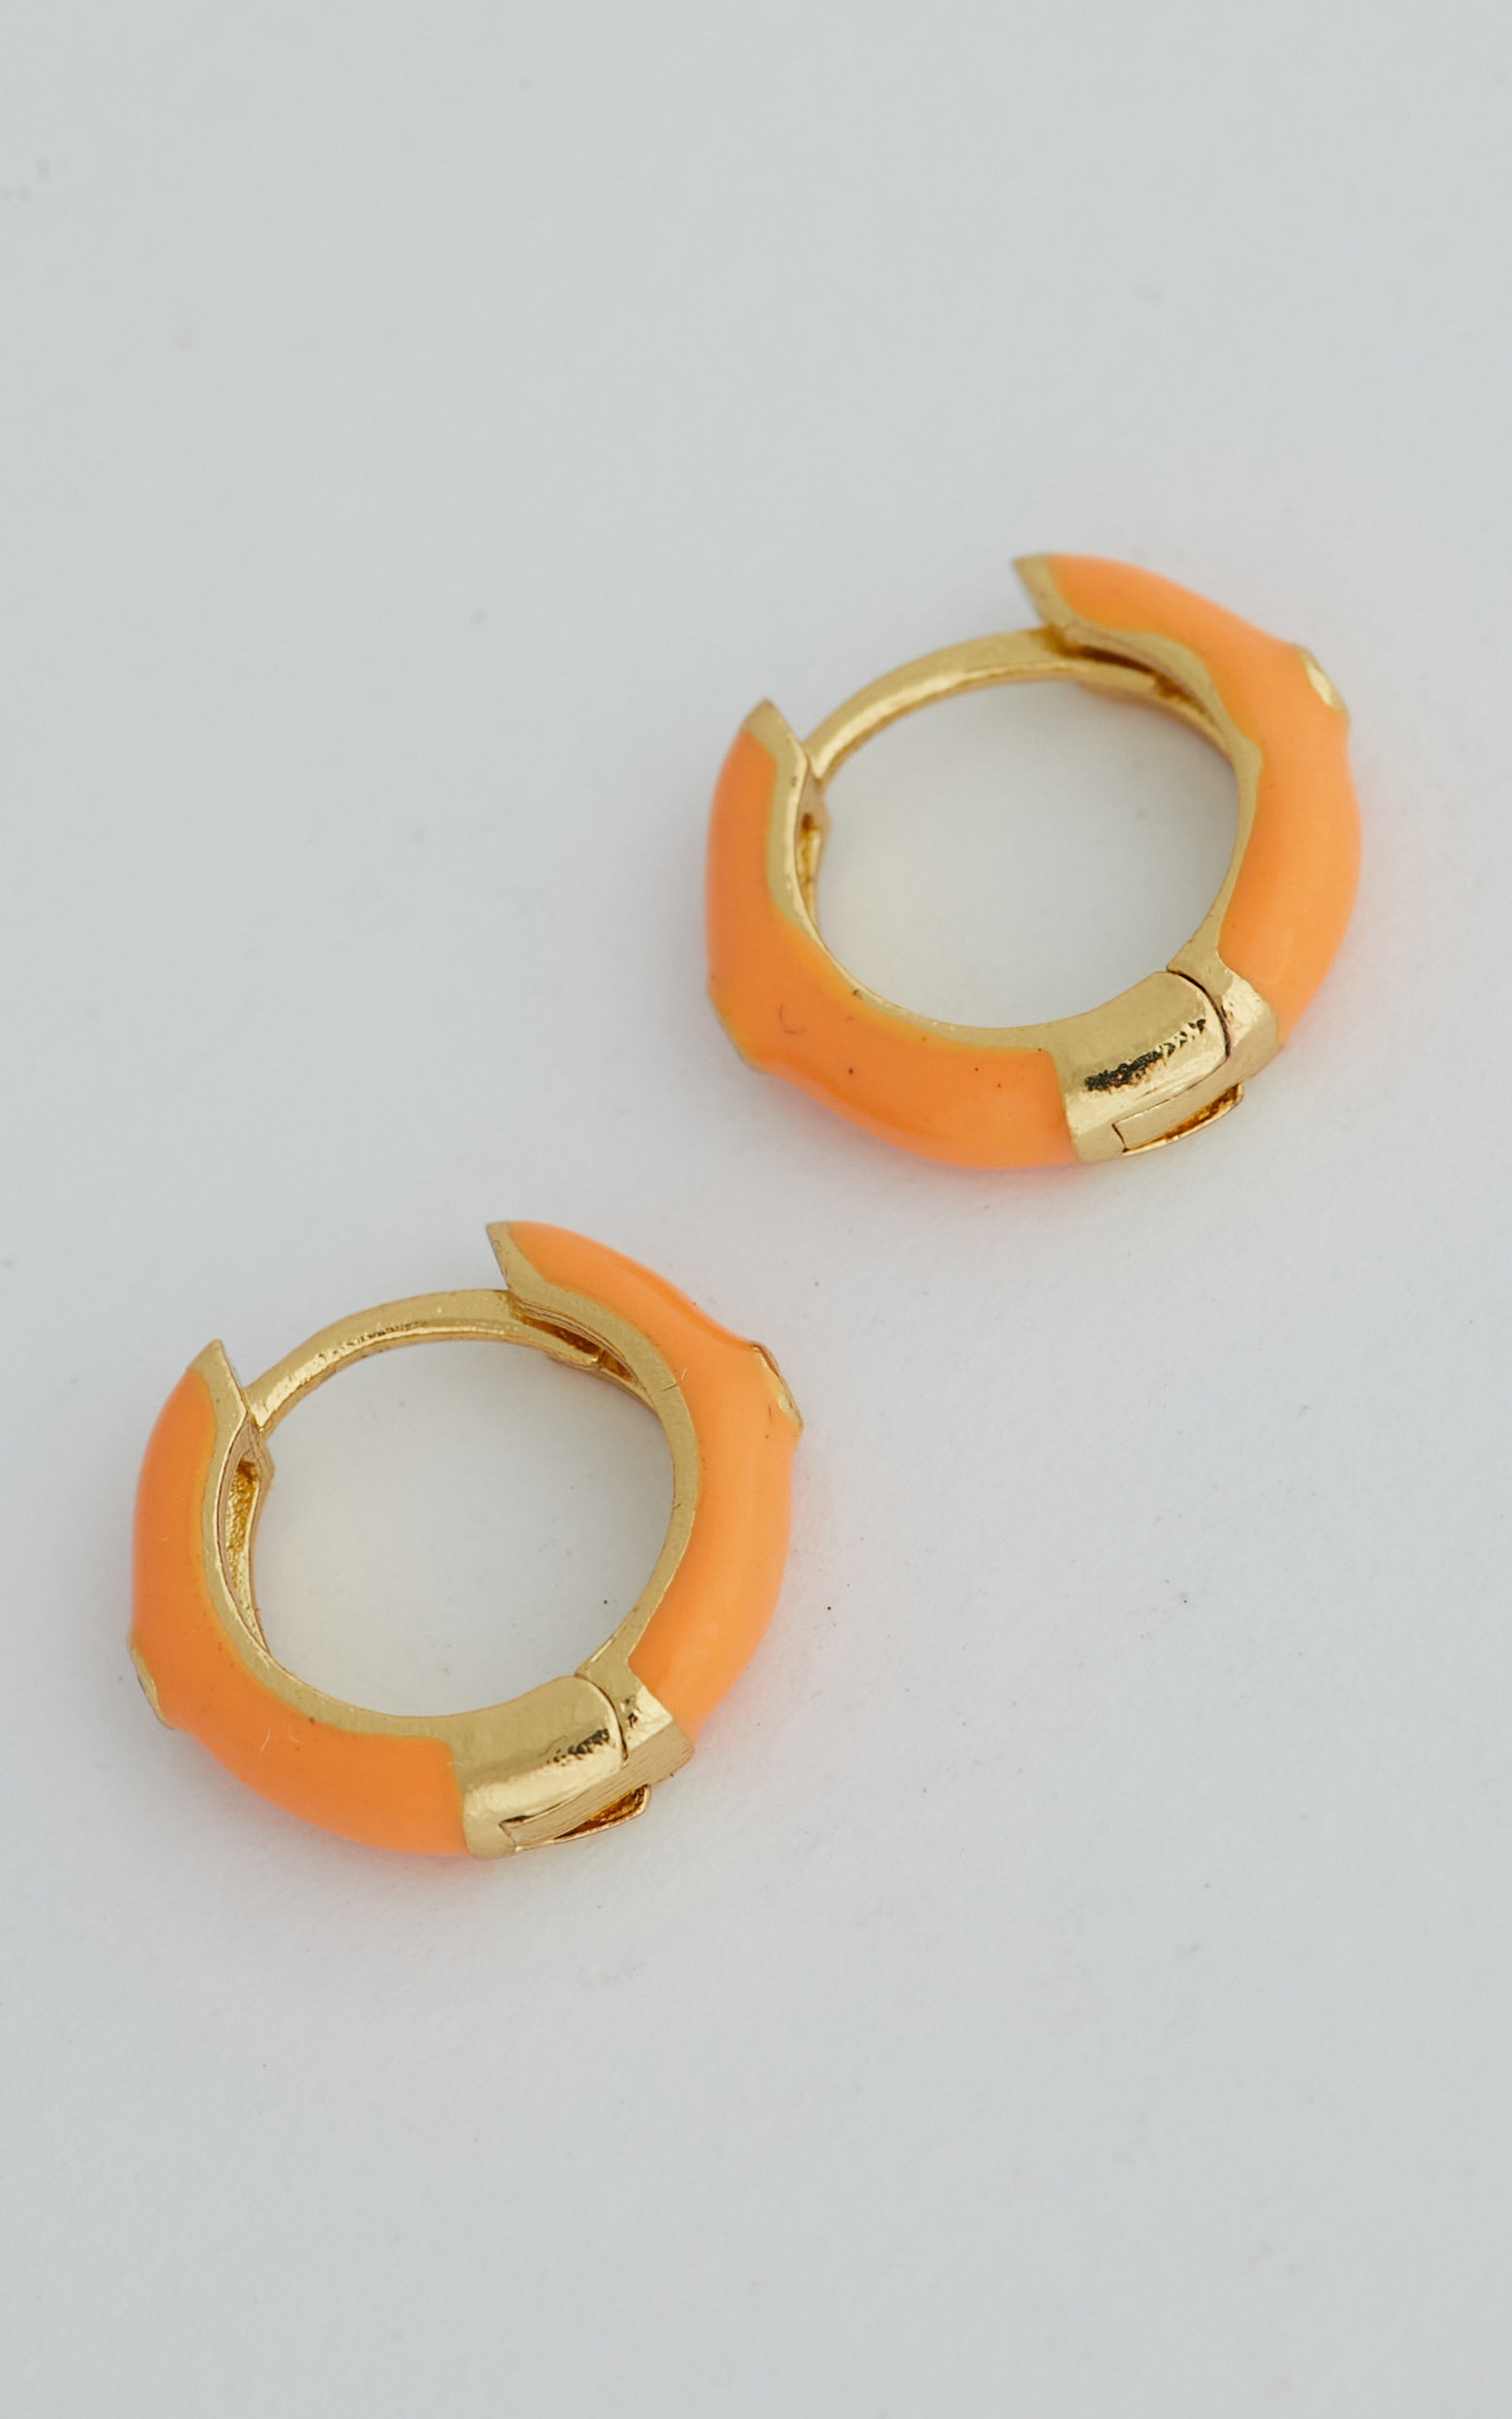 Tamishee Mini Hoop Earrings in Orange - NoSize, ORG2, hi-res image number null